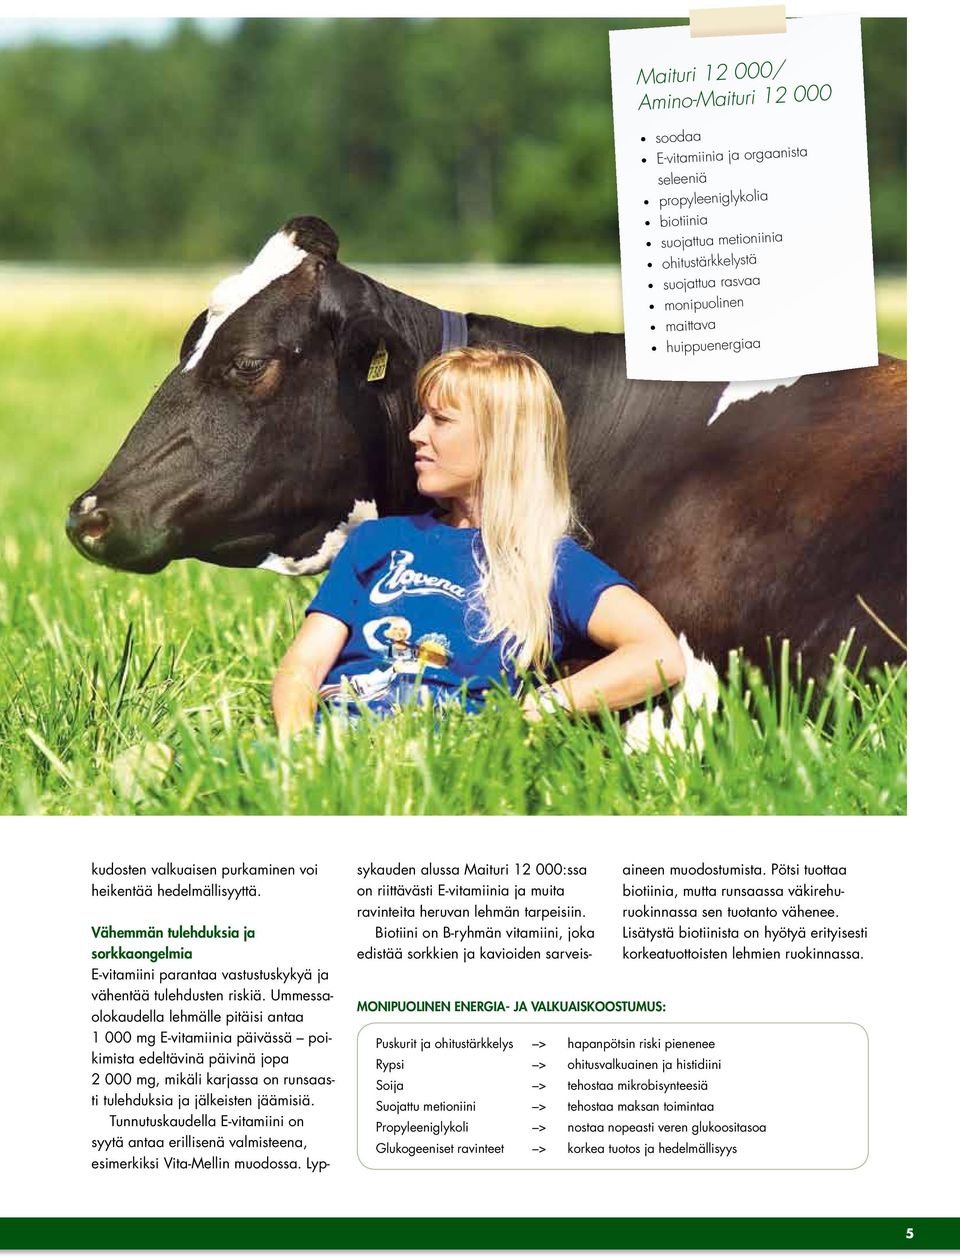 Ummessaolokaudella lehmälle pitäisi antaa 1 000 mg E-vitamiinia päivässä poikimista edeltävinä päivinä jopa 2 000 mg, mikäli karjassa on runsaasti tulehduksia ja jälkeisten jäämisiä.